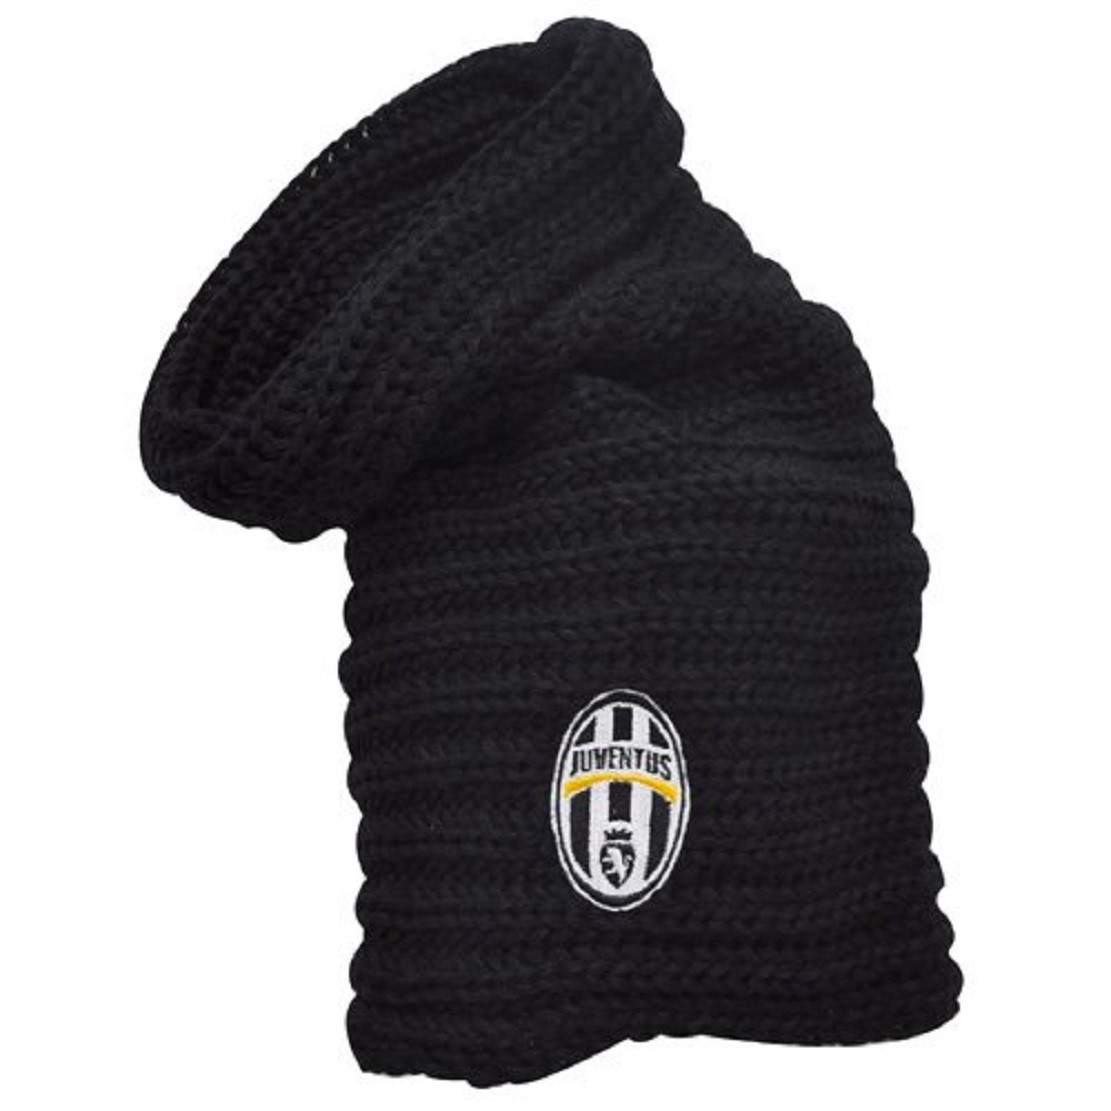 Scaldacollo Invernale Juve Nero Abbigliamento Ufficiale Juventus PS 25998 Pelusciamo Store Marchirolo